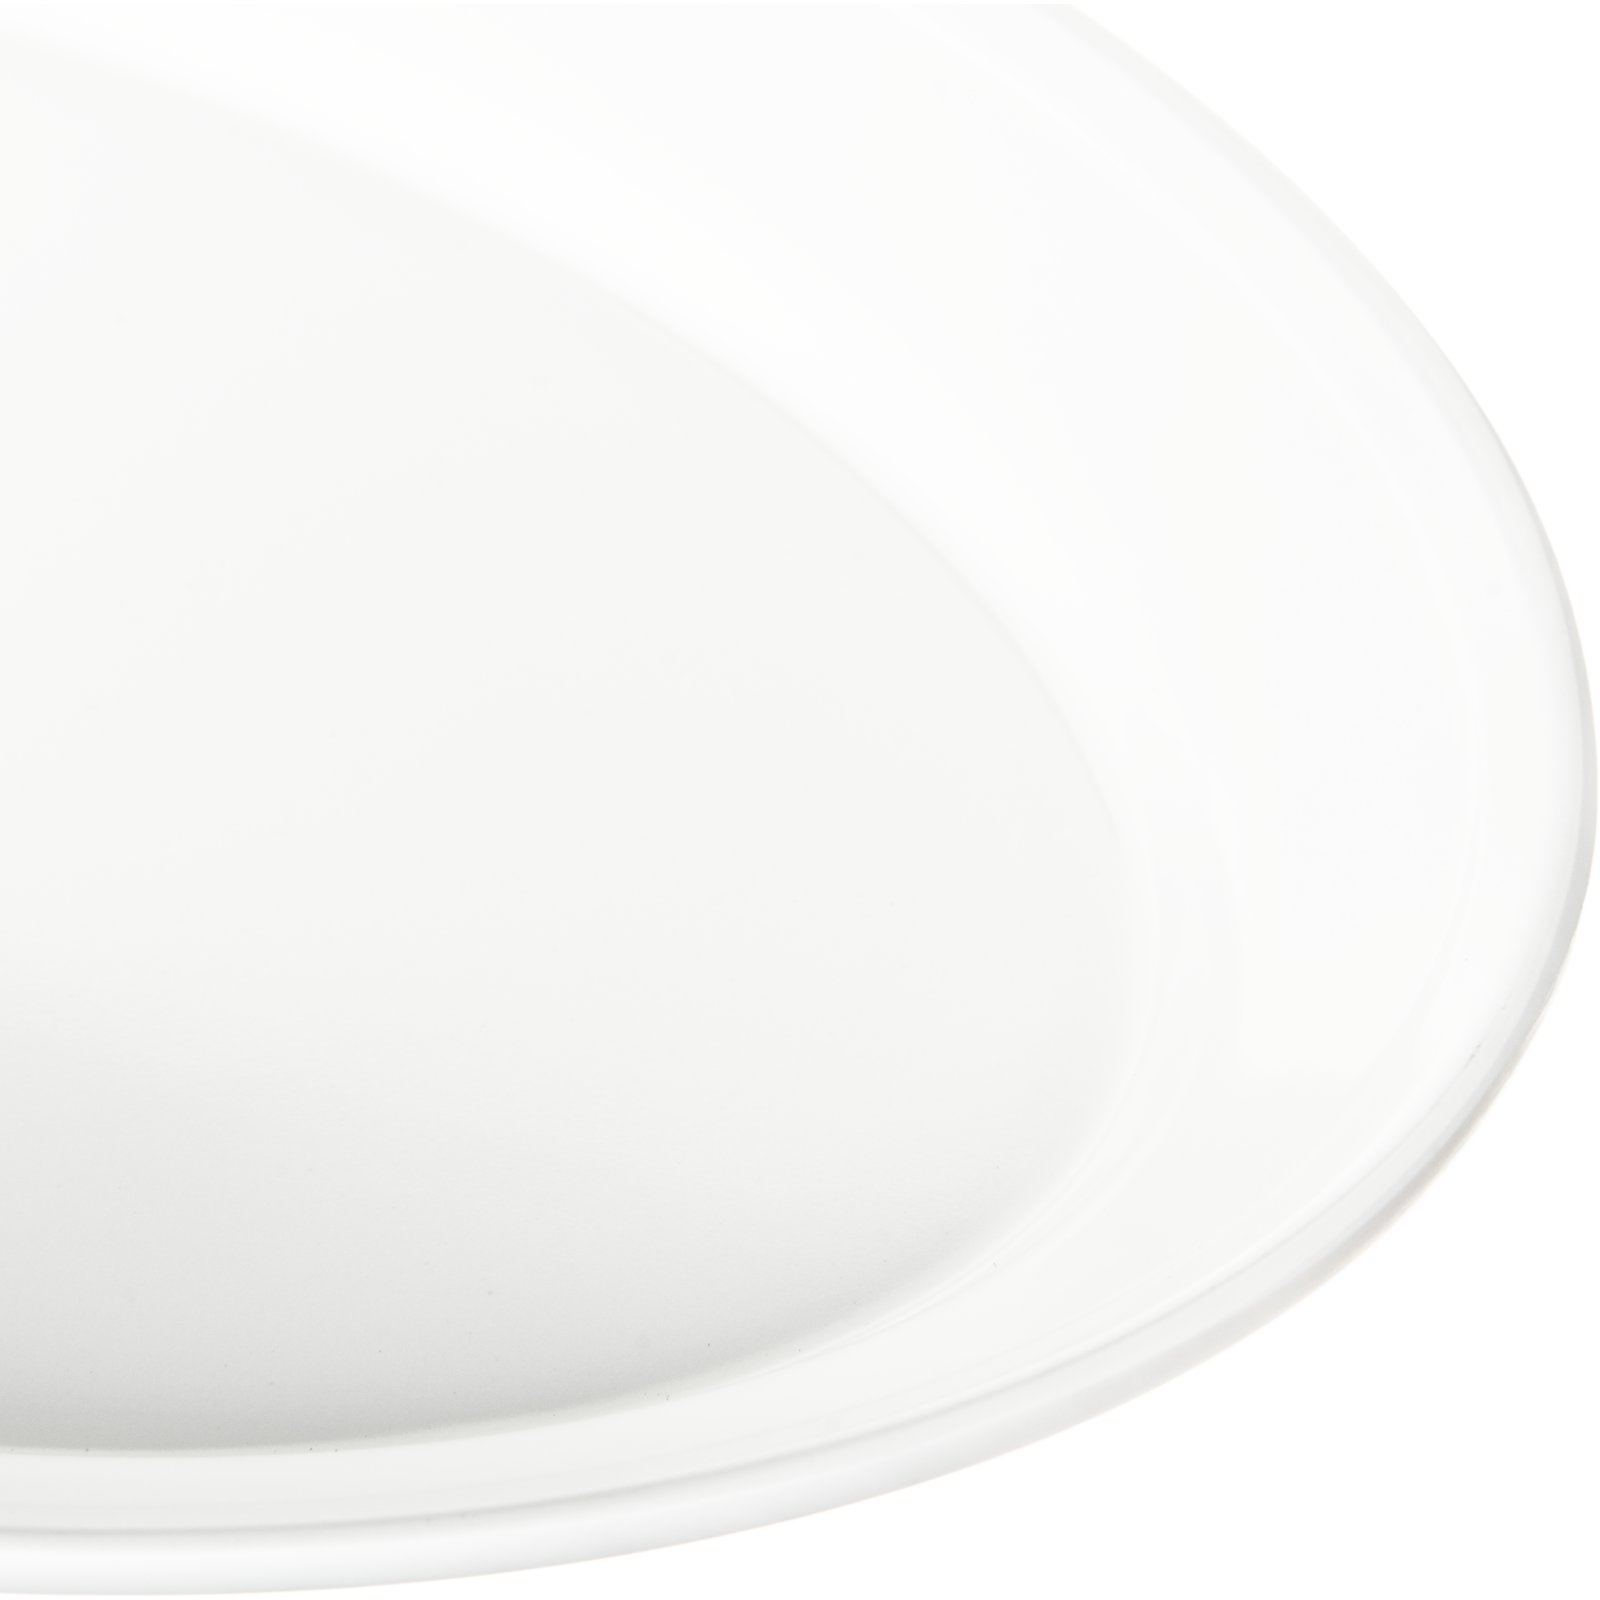 14 x 10 Carlisle 4384202 Designer Displayware Melamine Oblong Platter White Pack of 12 